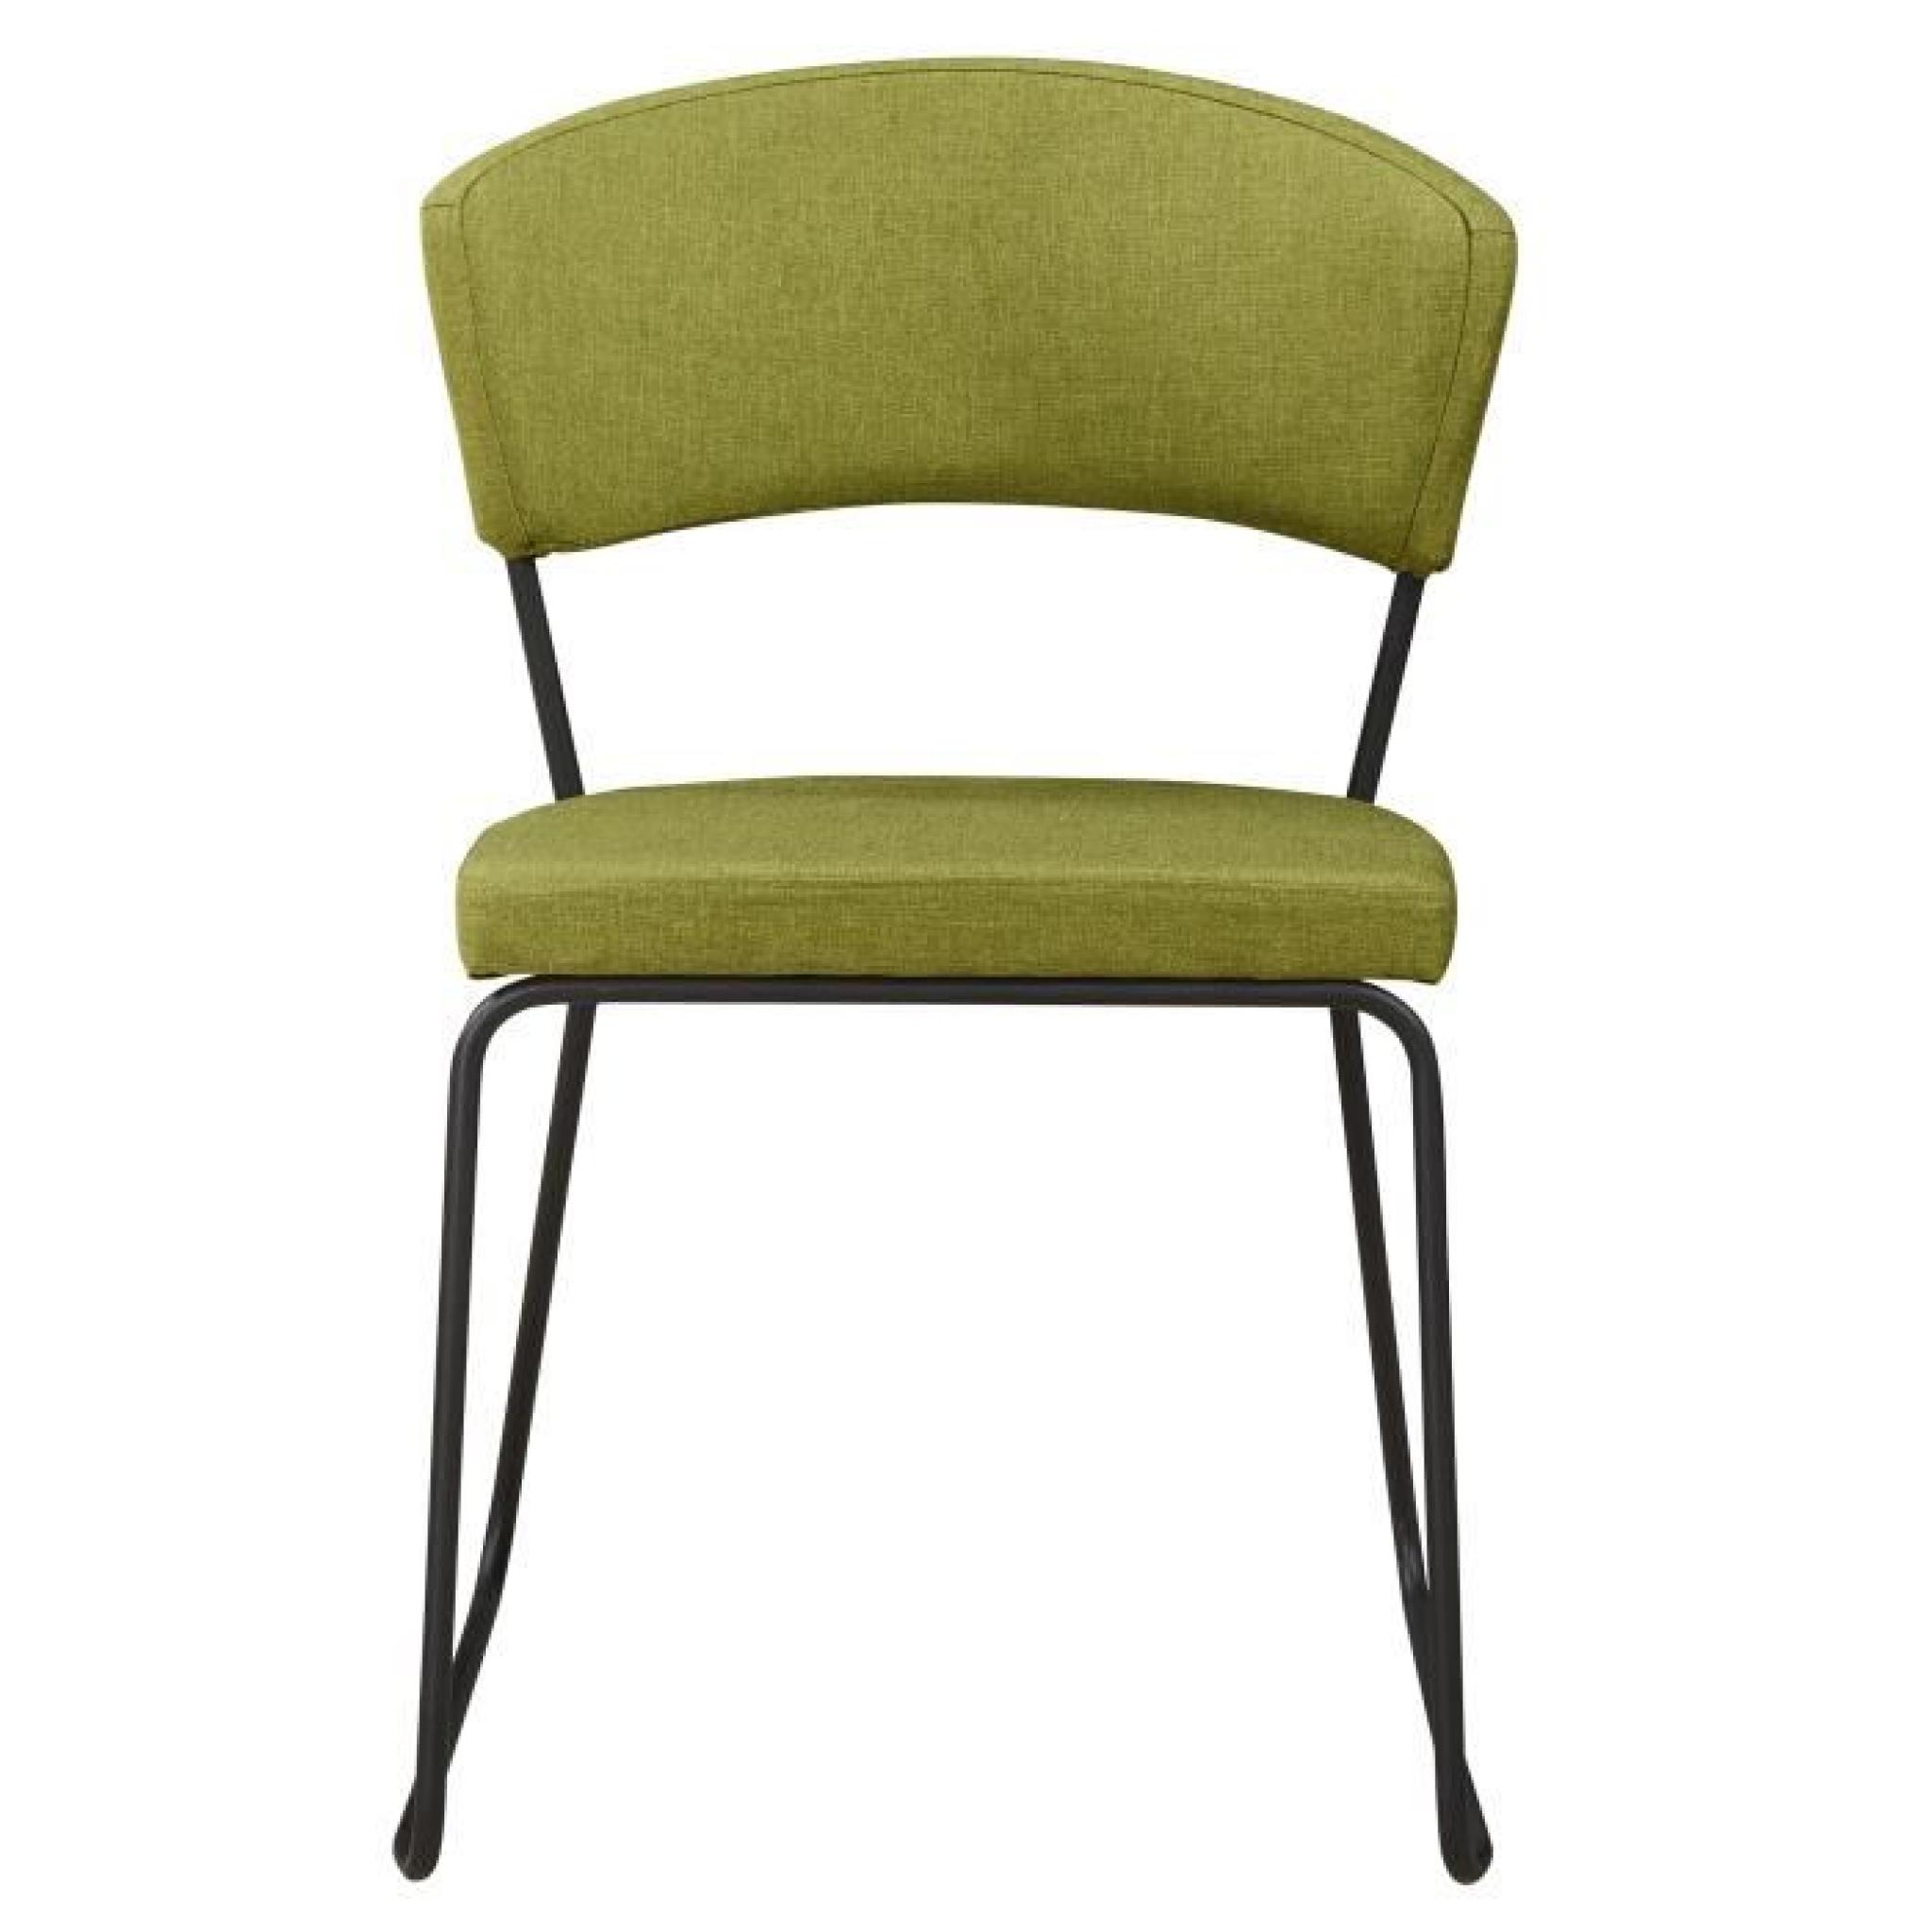 Chaise design minimaliste en tissus coloris vert olive pas cher